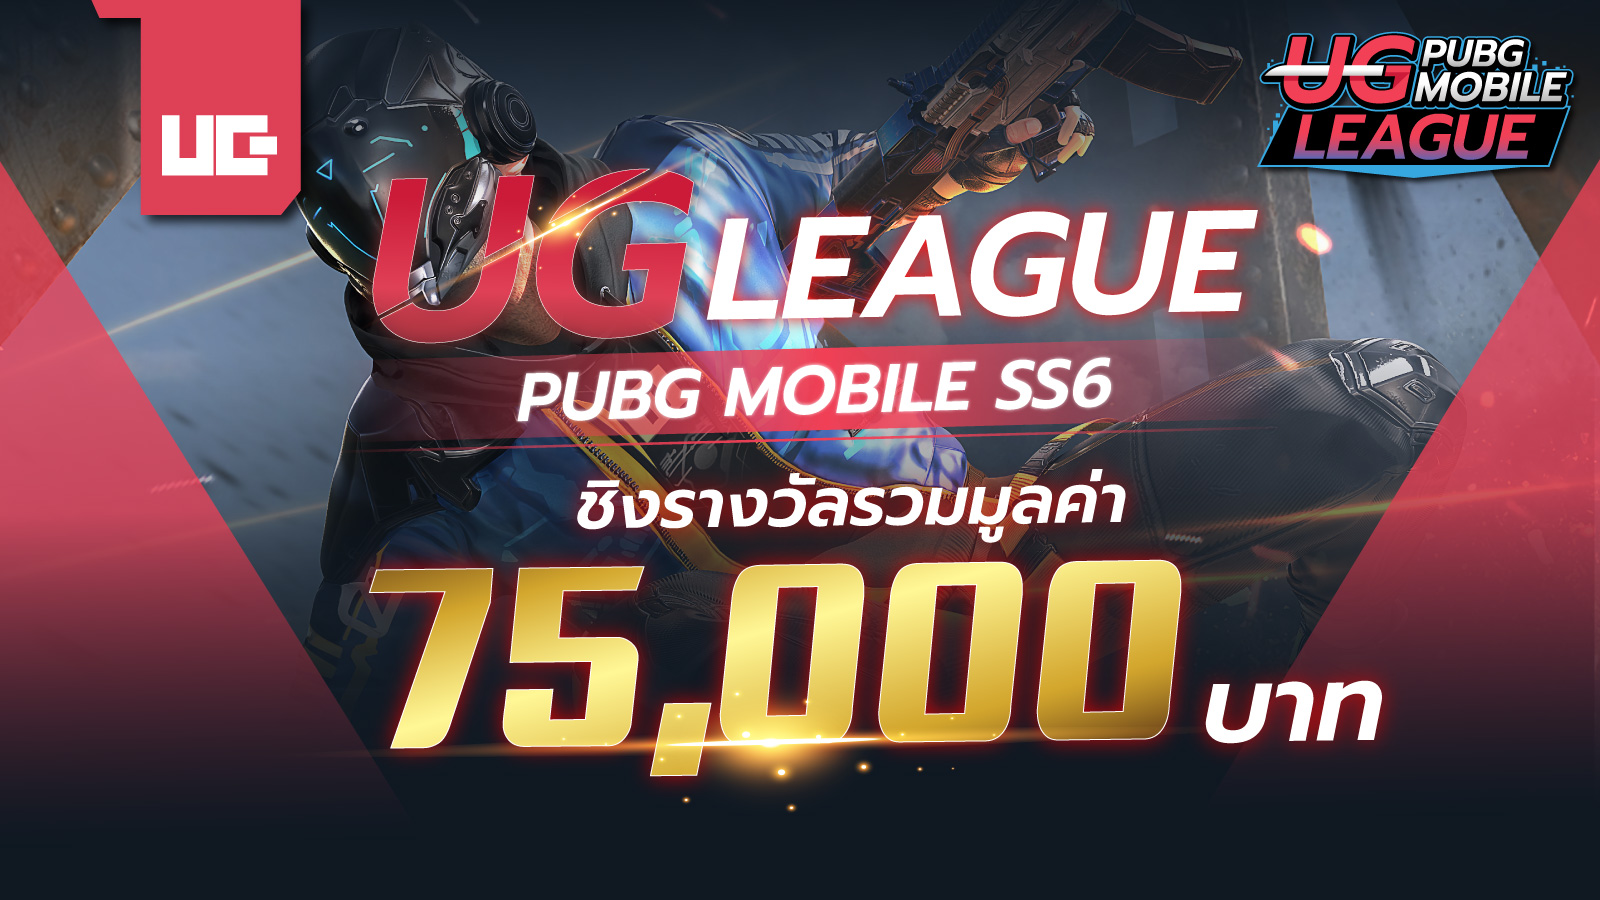 เปิดรับสมัครแล้ว! UG League Pubg Mobile SS6